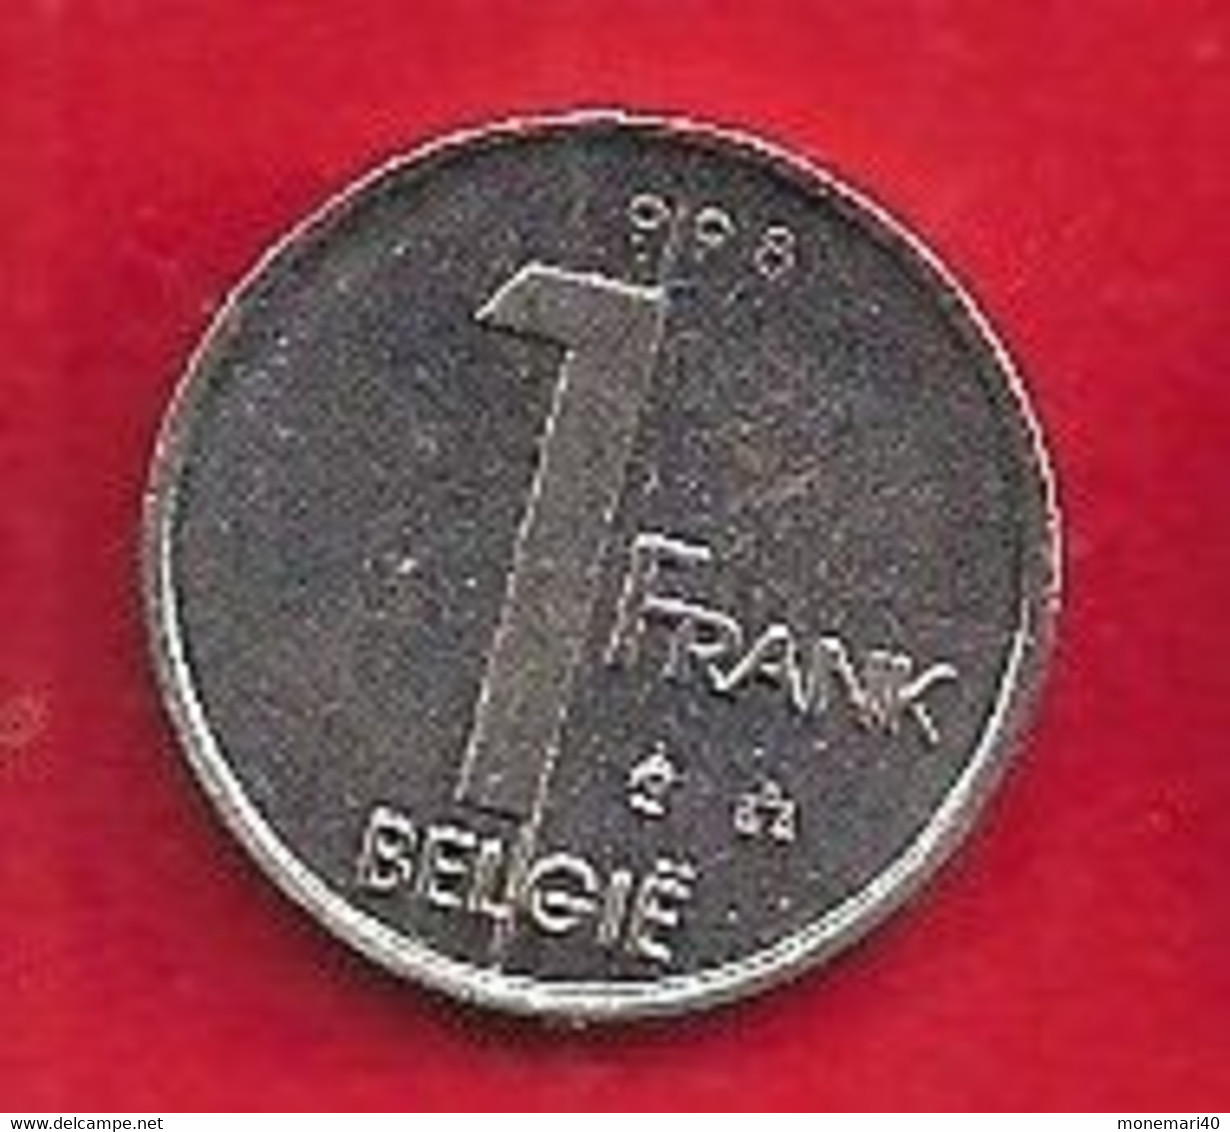 BELGIQUE - 1 FRANC - ALBERT I - 1998. - 1 Franc